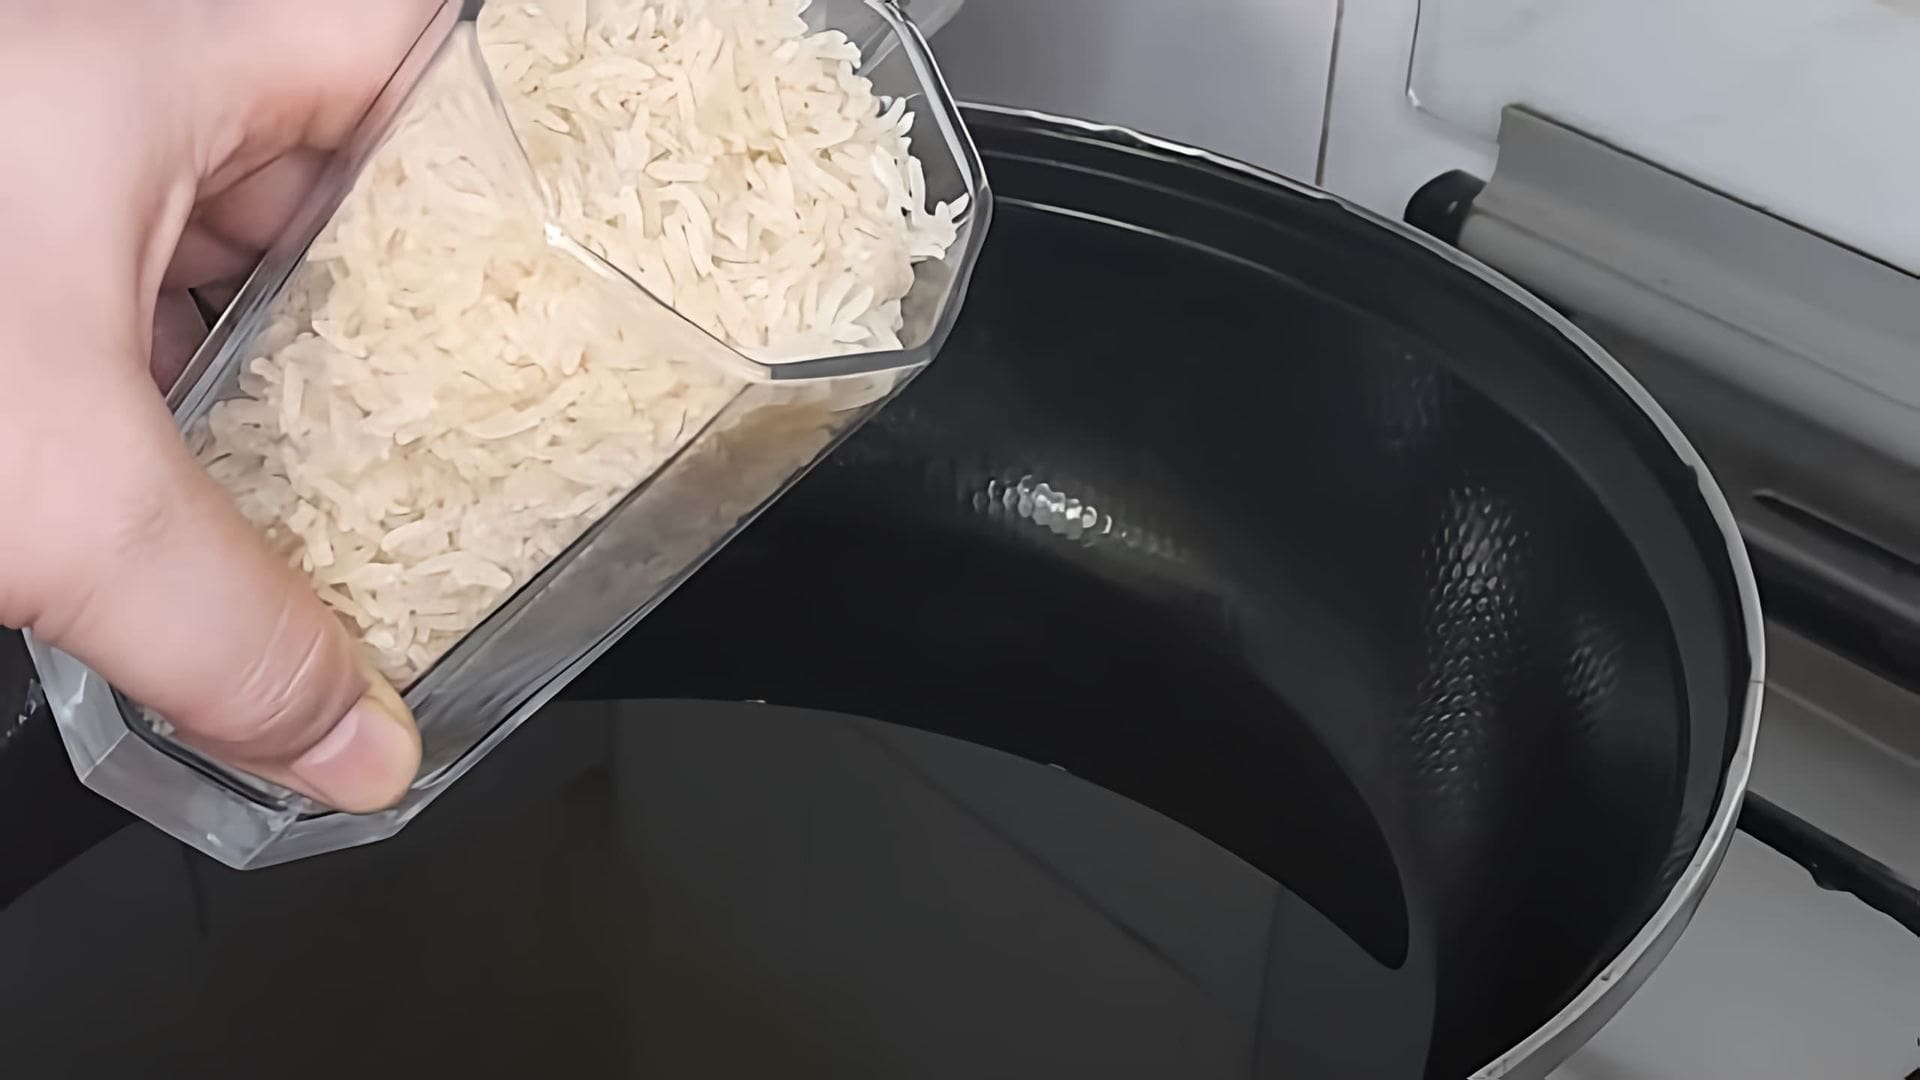 В этом видео-ролике демонстрируется процесс приготовления воздушного риса, который также известен как пуфф-рис